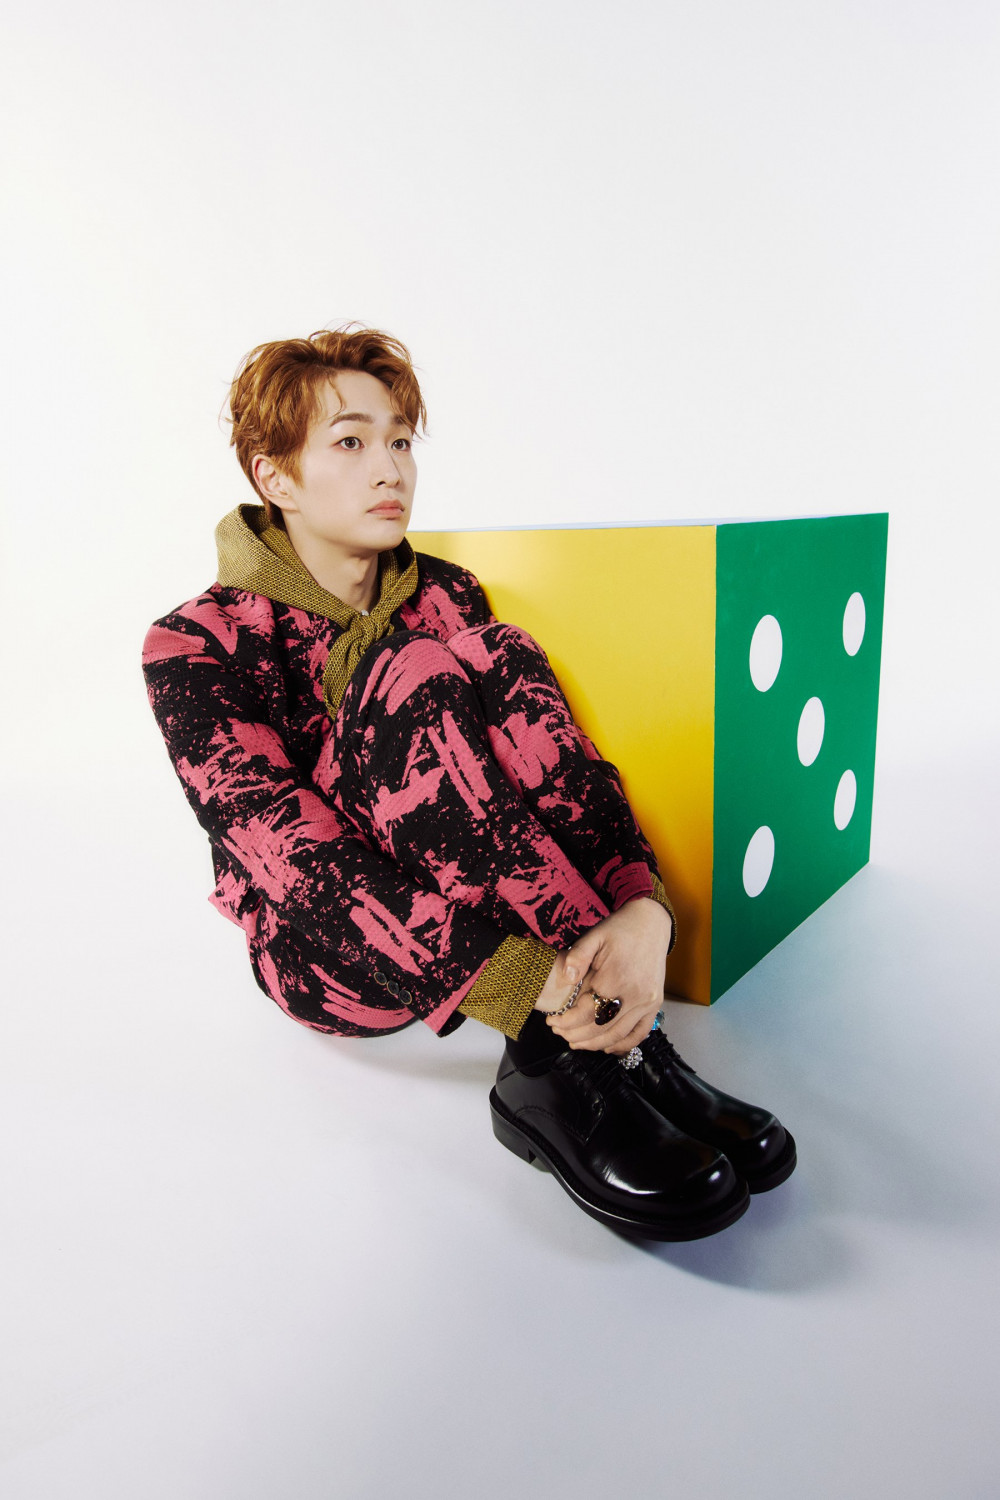 [Камбэк] Онью из SHINee мини-альбом«DICE»: музыкальный клип